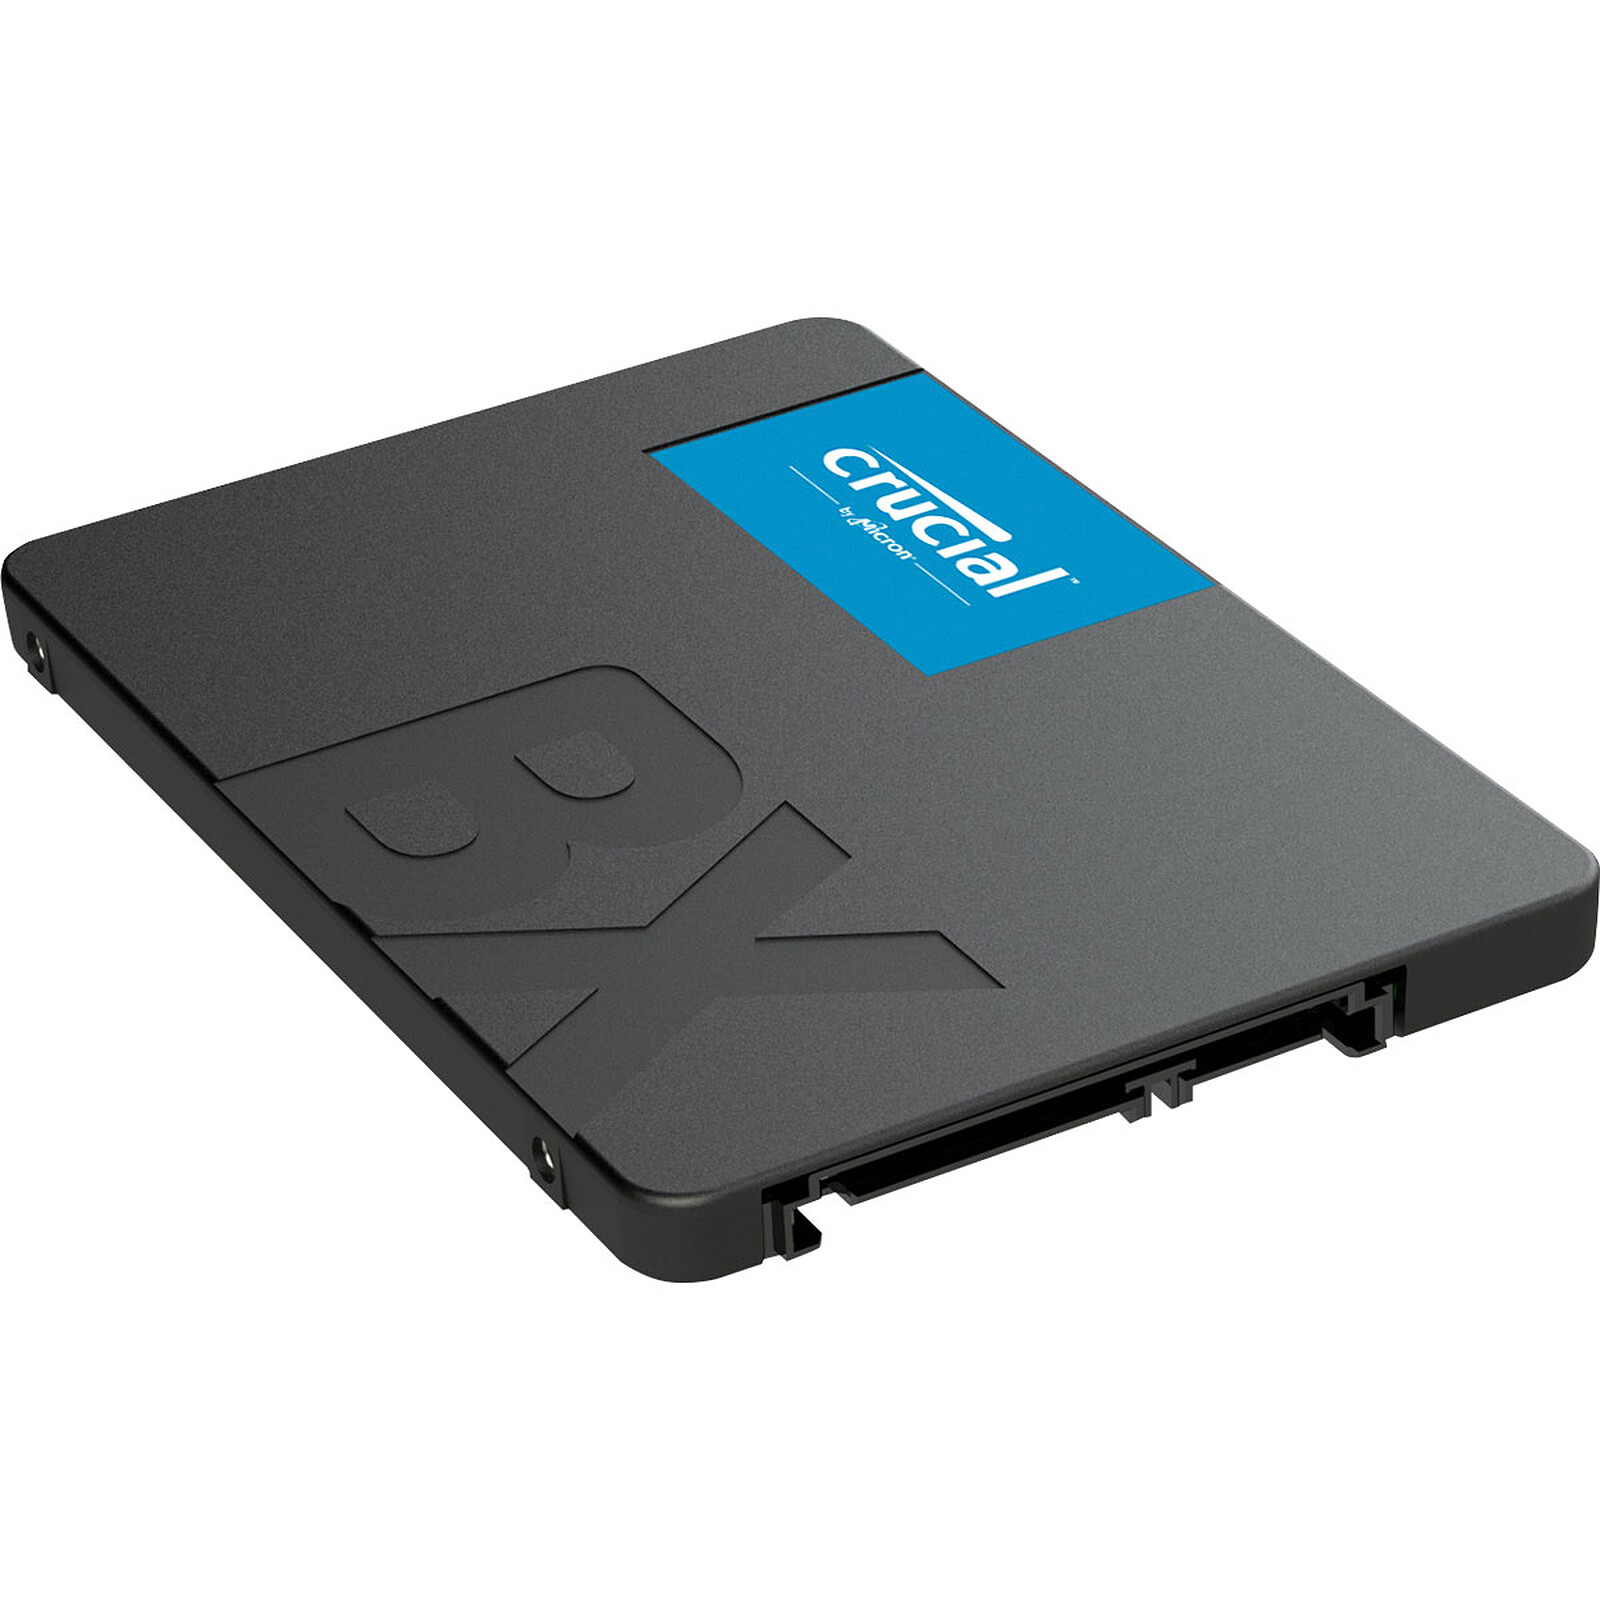 BX500 500 GB - Disco SSD Crucial LDLC